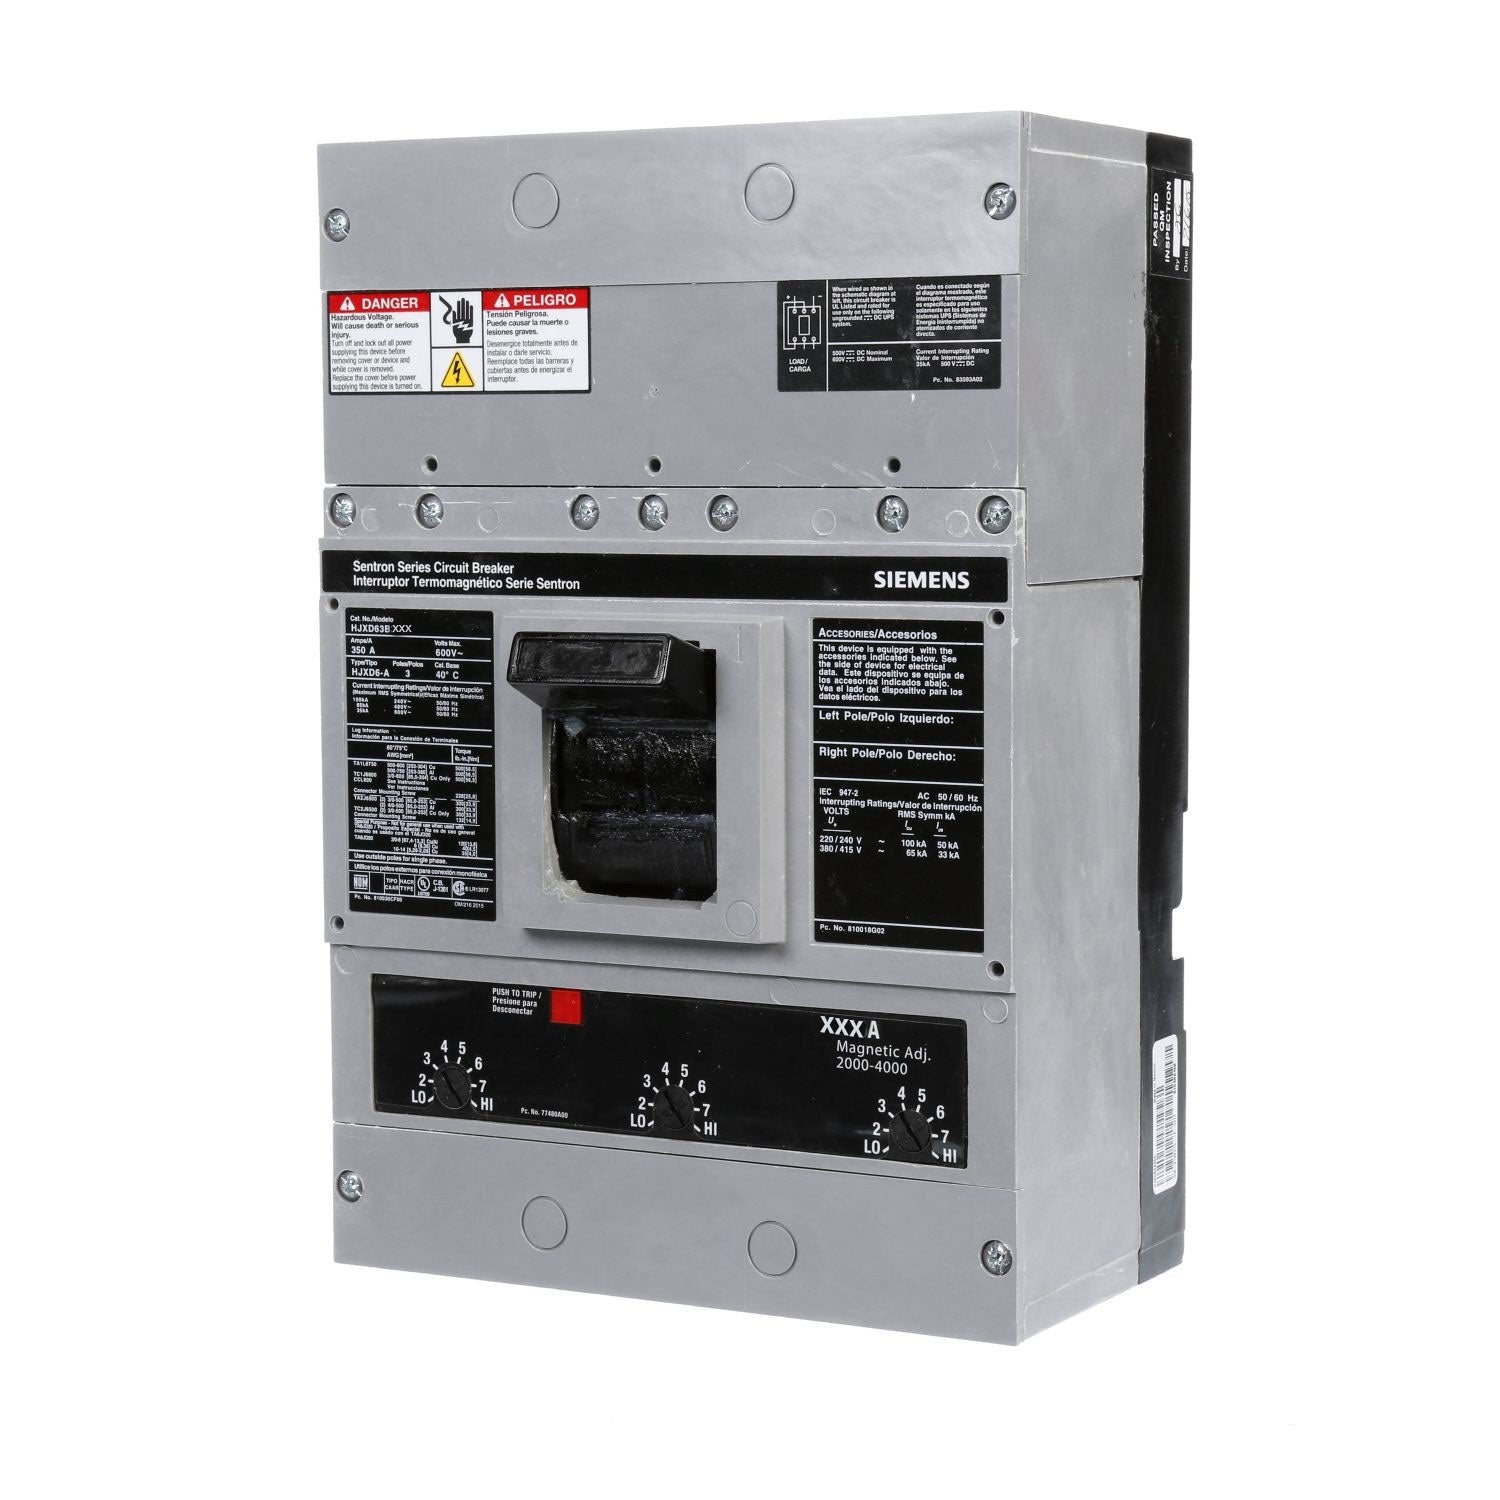 HJXD63B400H - Siemens - Molded Case Circuit Breaker